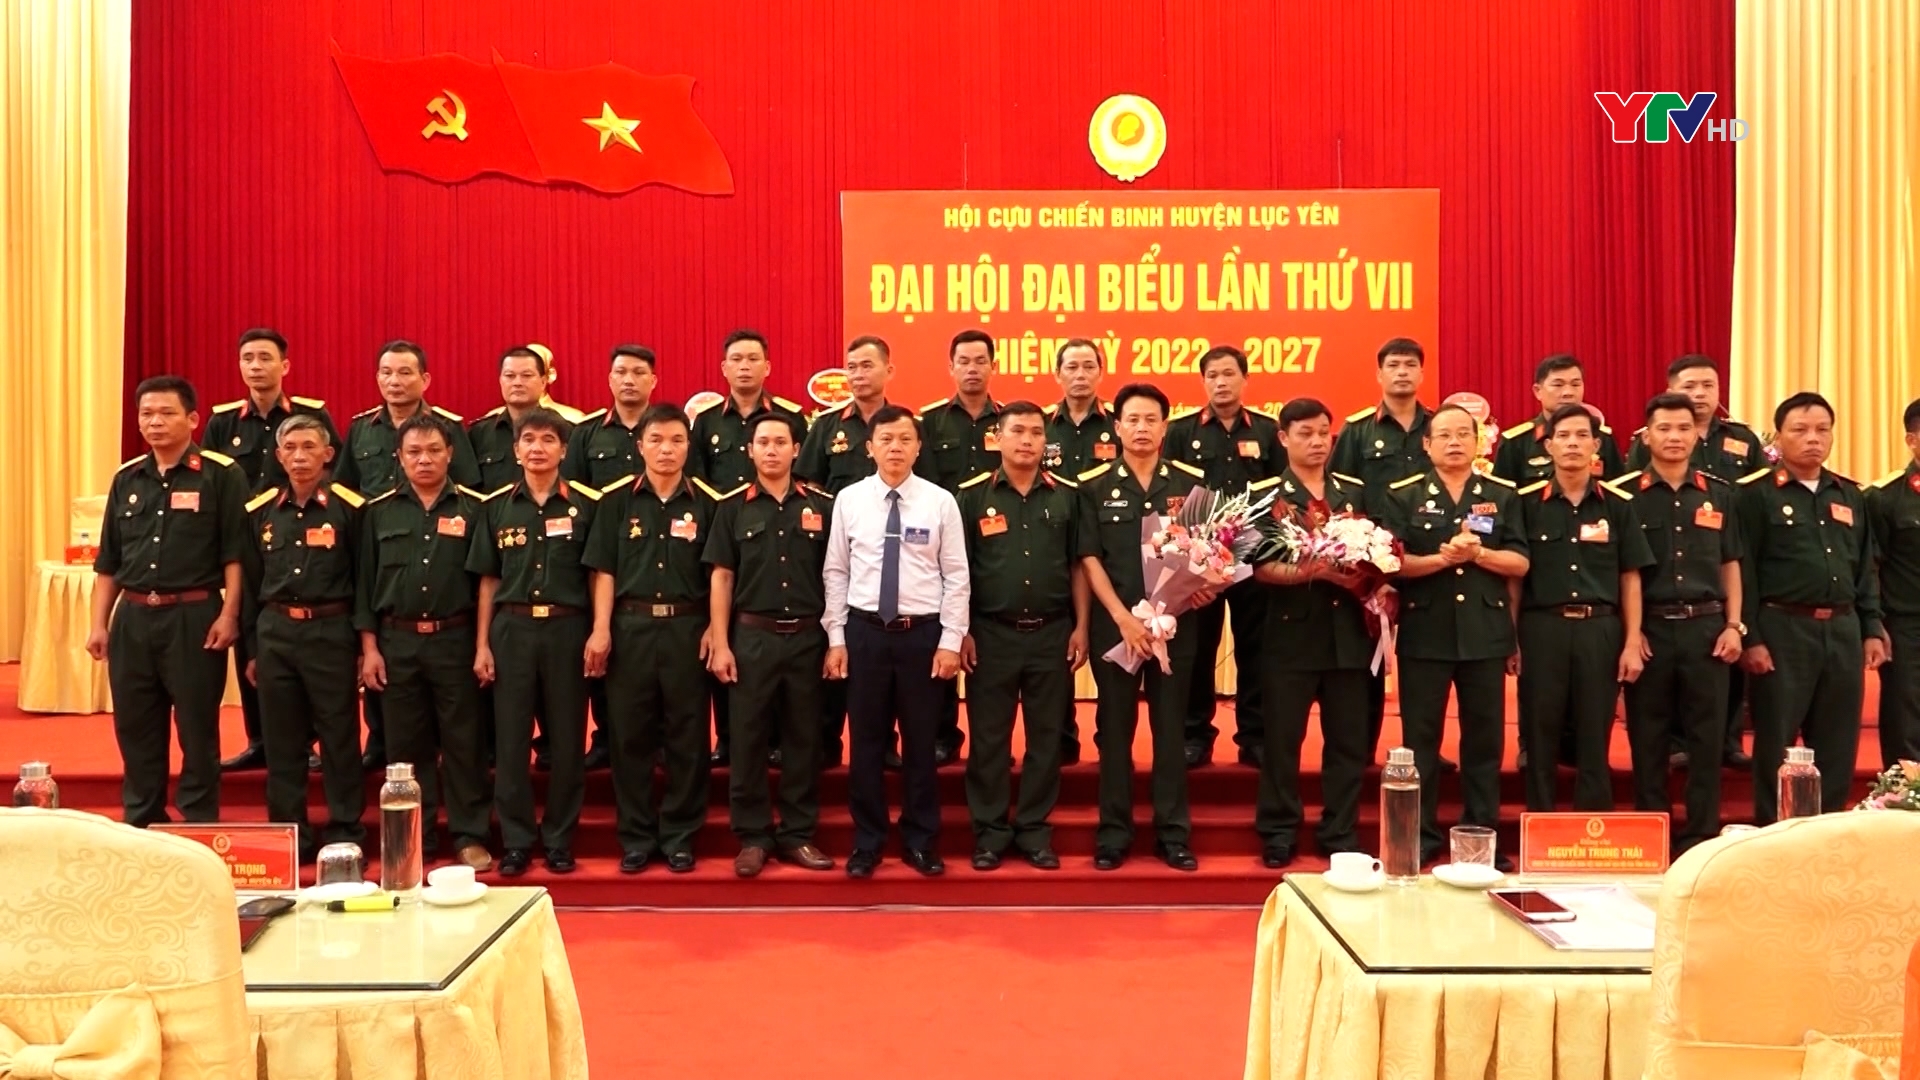 Đại hội Hội Cựu chiến binh huyện Lục Yên và huyện Trạm Tấu nhiệm kỳ 2022-2027